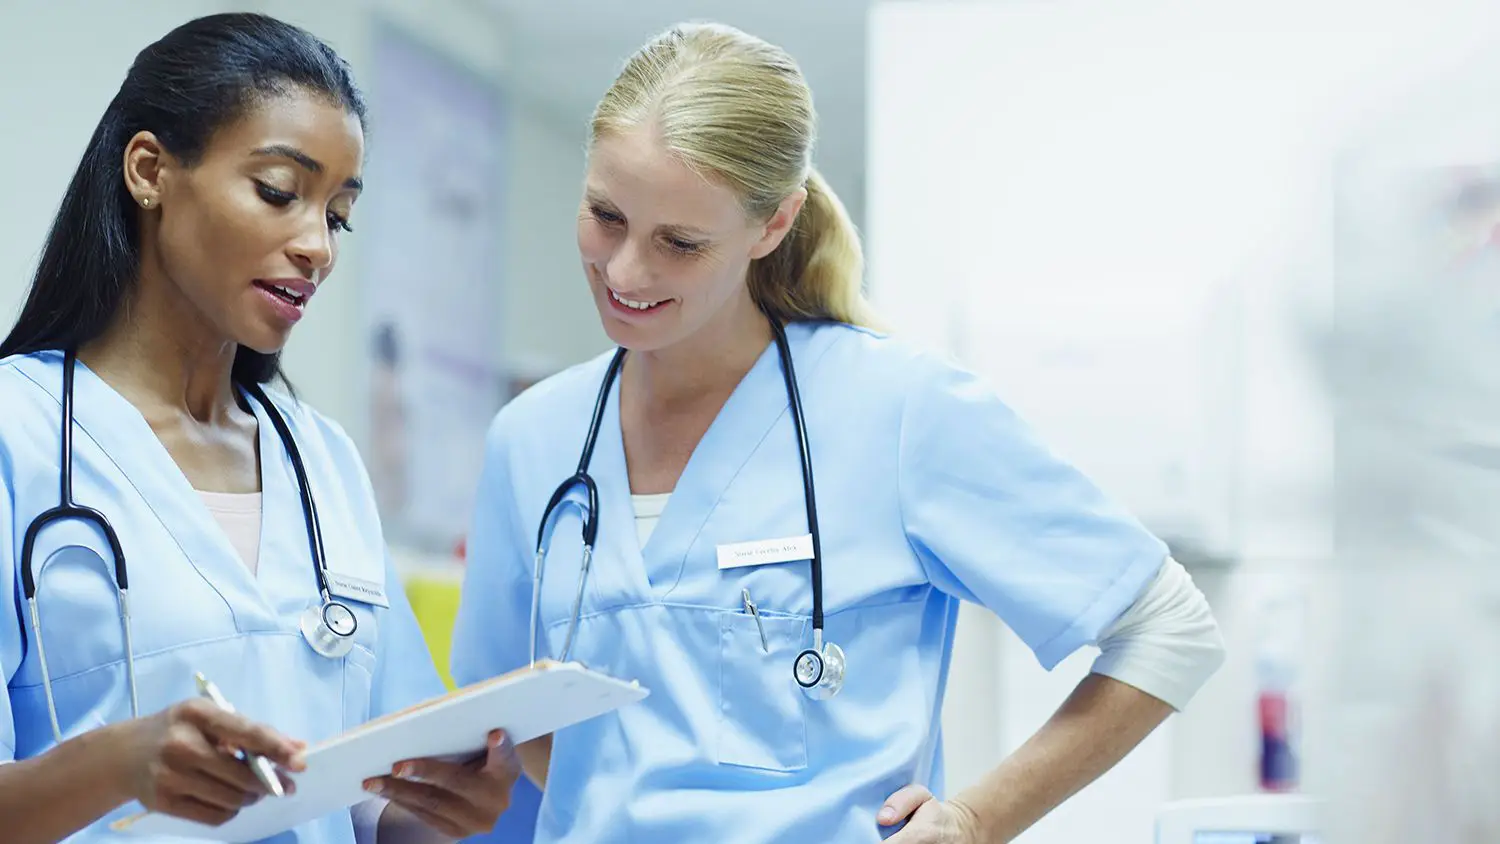 Choosing Nurse Practitioner Specialty